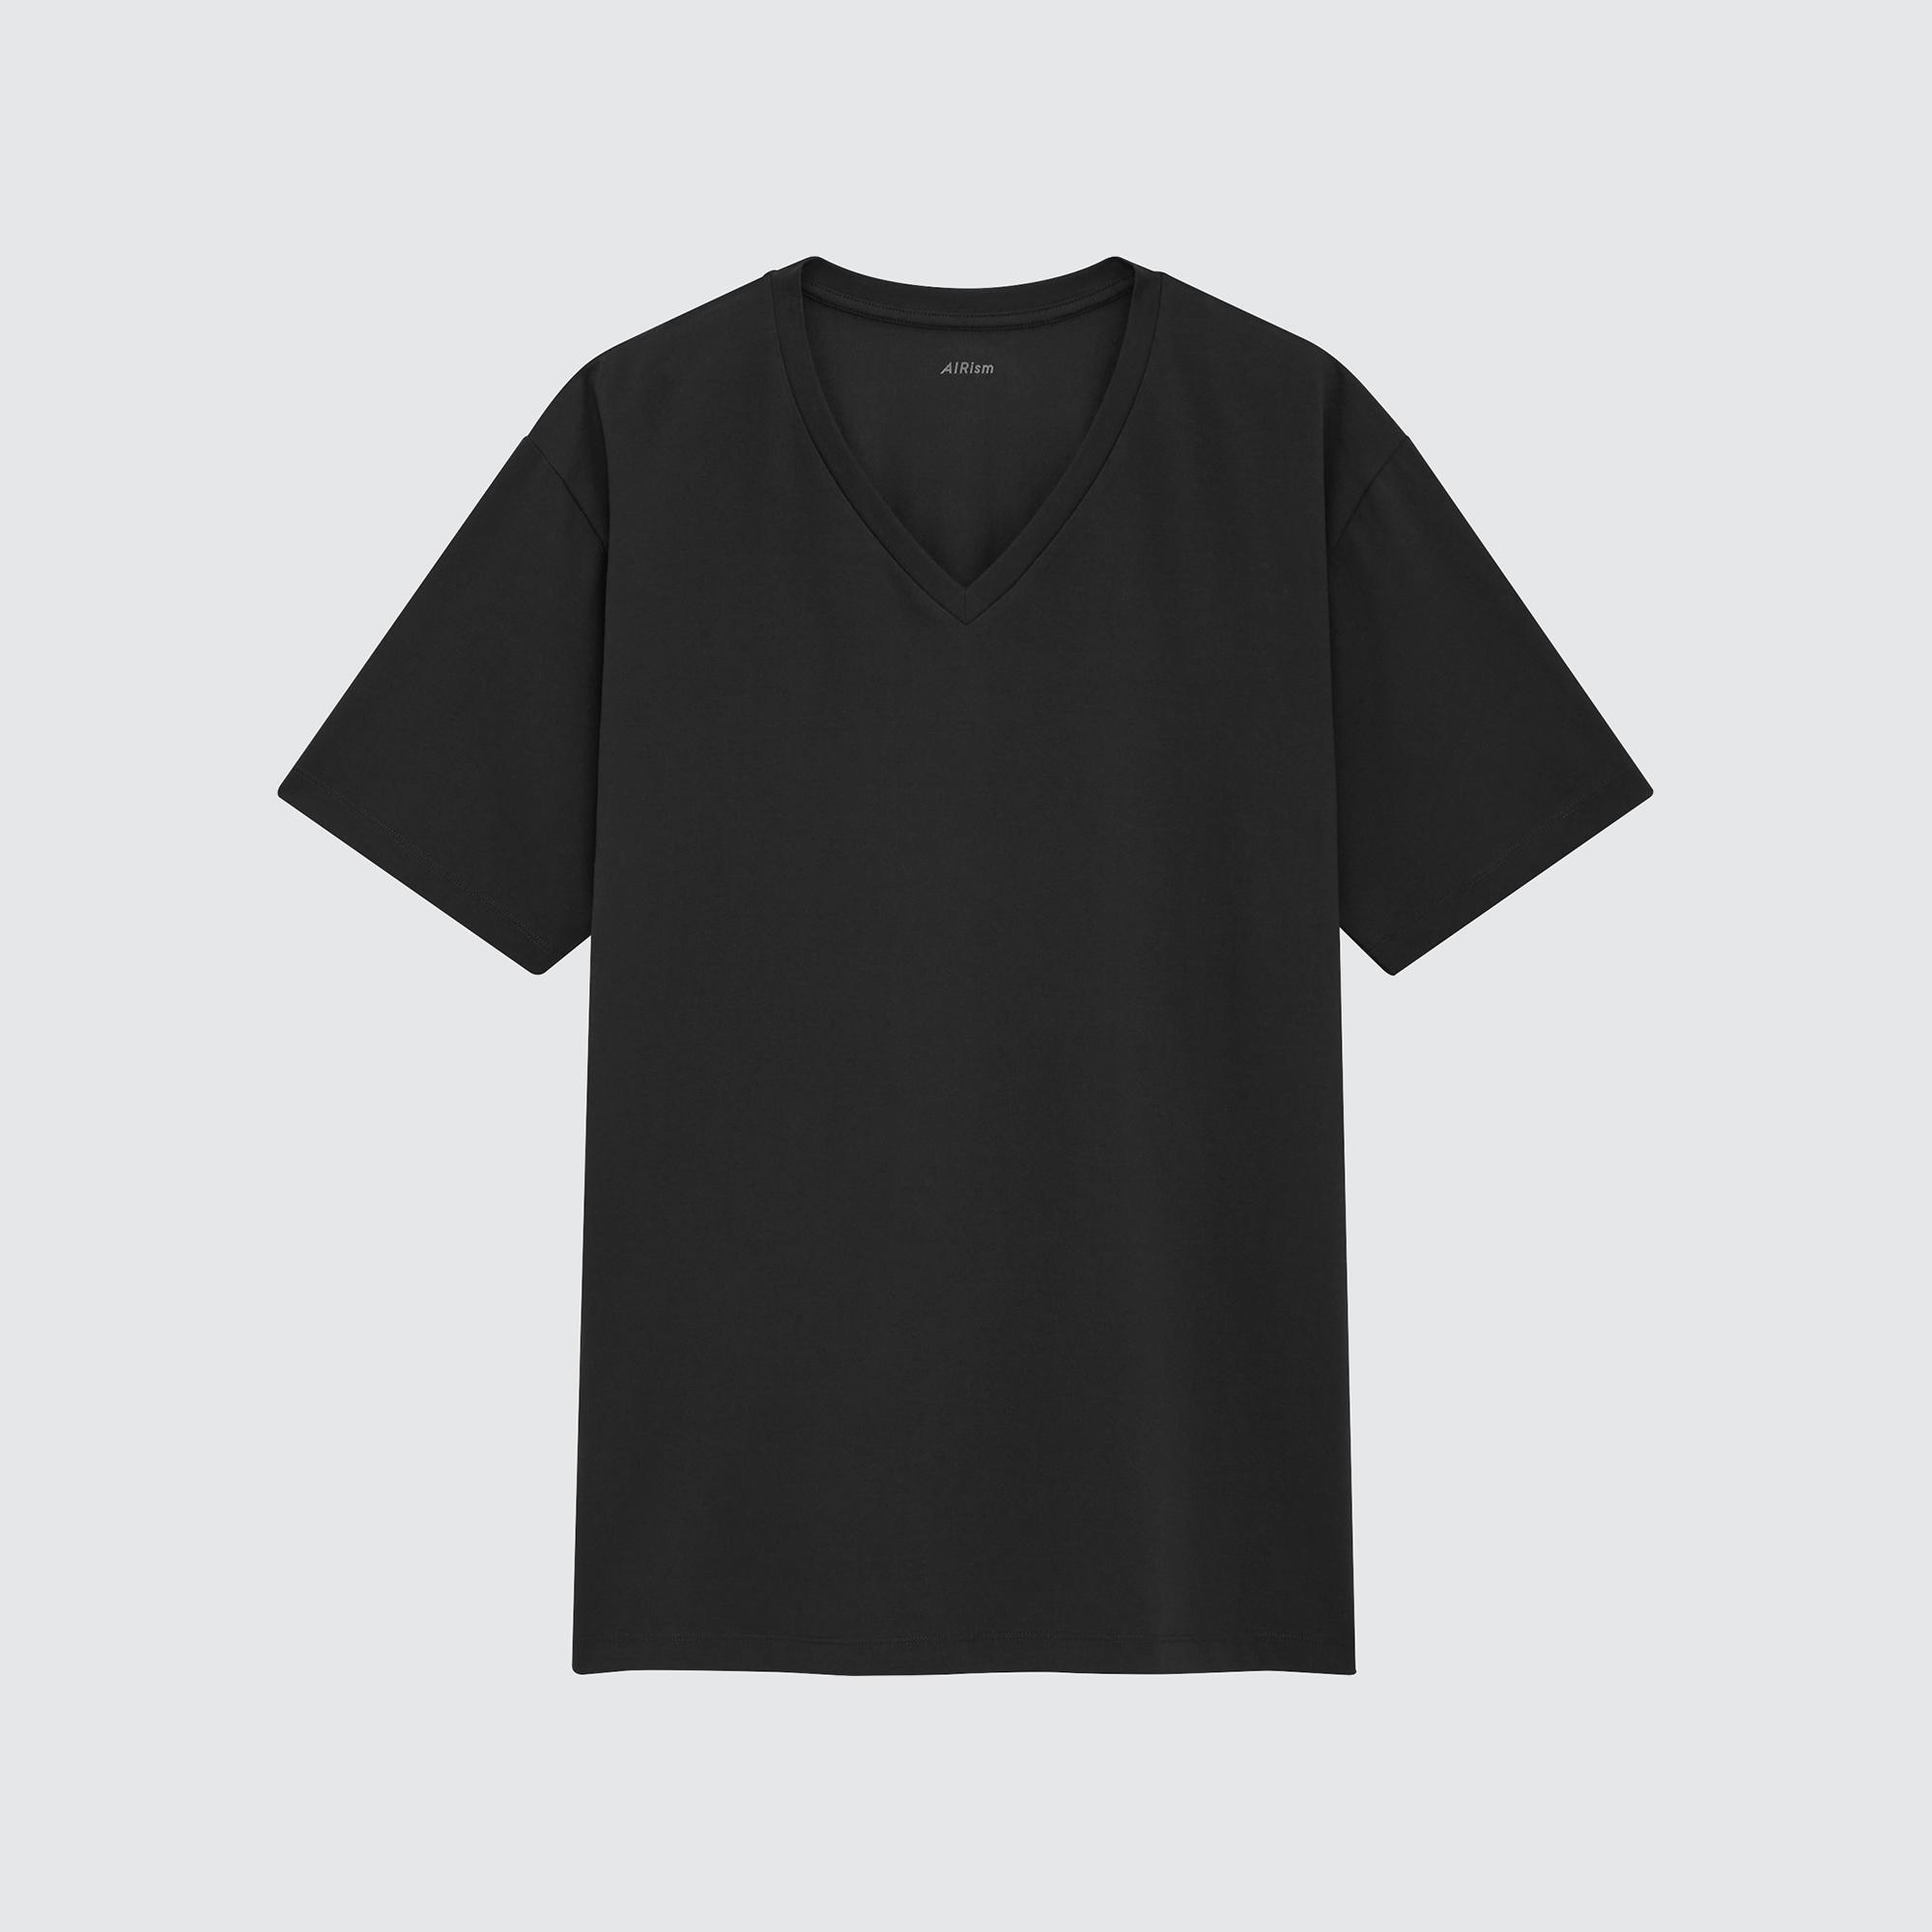 ユニクロ公式 | Tシャツ・カットソー(メンズ) (men) | ユニクロ